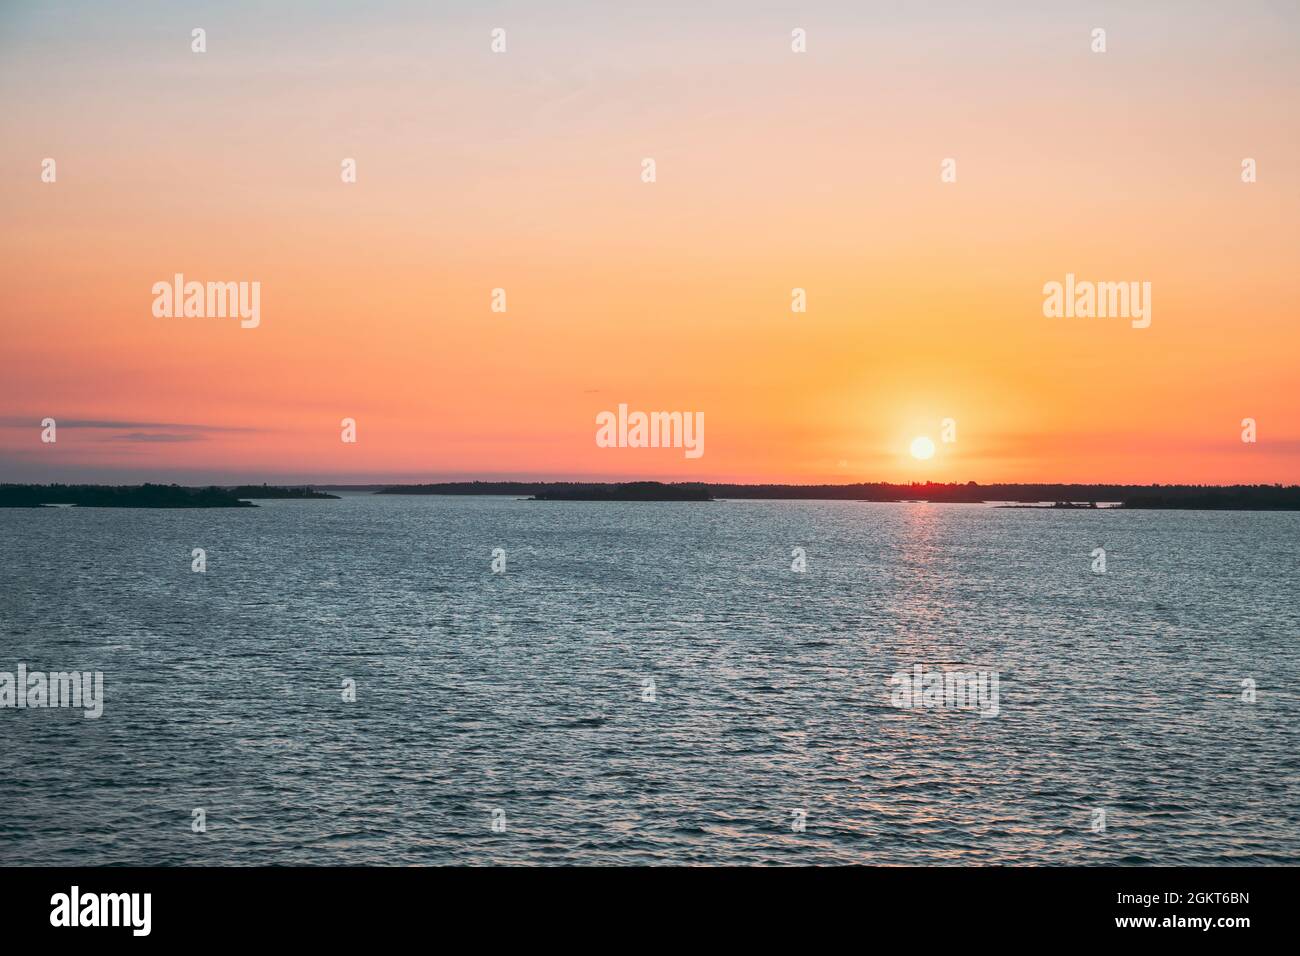 Suède. Magnifique vue sur la mer au coucher du soleil. Soleil au-dessus de l'archipel des îles Rocheuses. Soirée d'été ensoleillée Banque D'Images